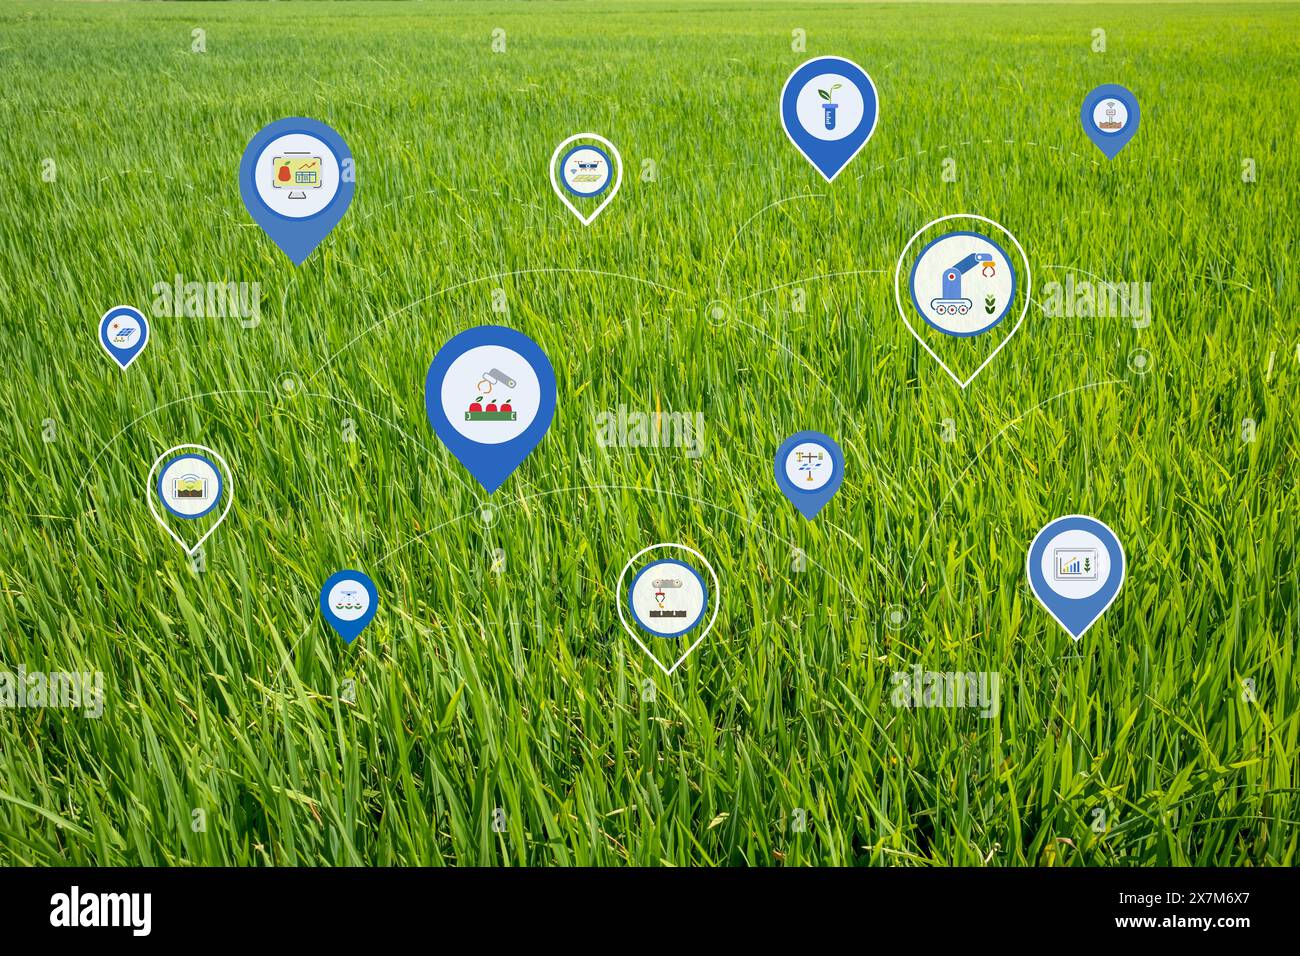 Automatisierungsfarm für Präzisionslandwirtschaftstechnologie mit digitaler Schnittstelle auf grünem Feld Hintergrund Stockfoto